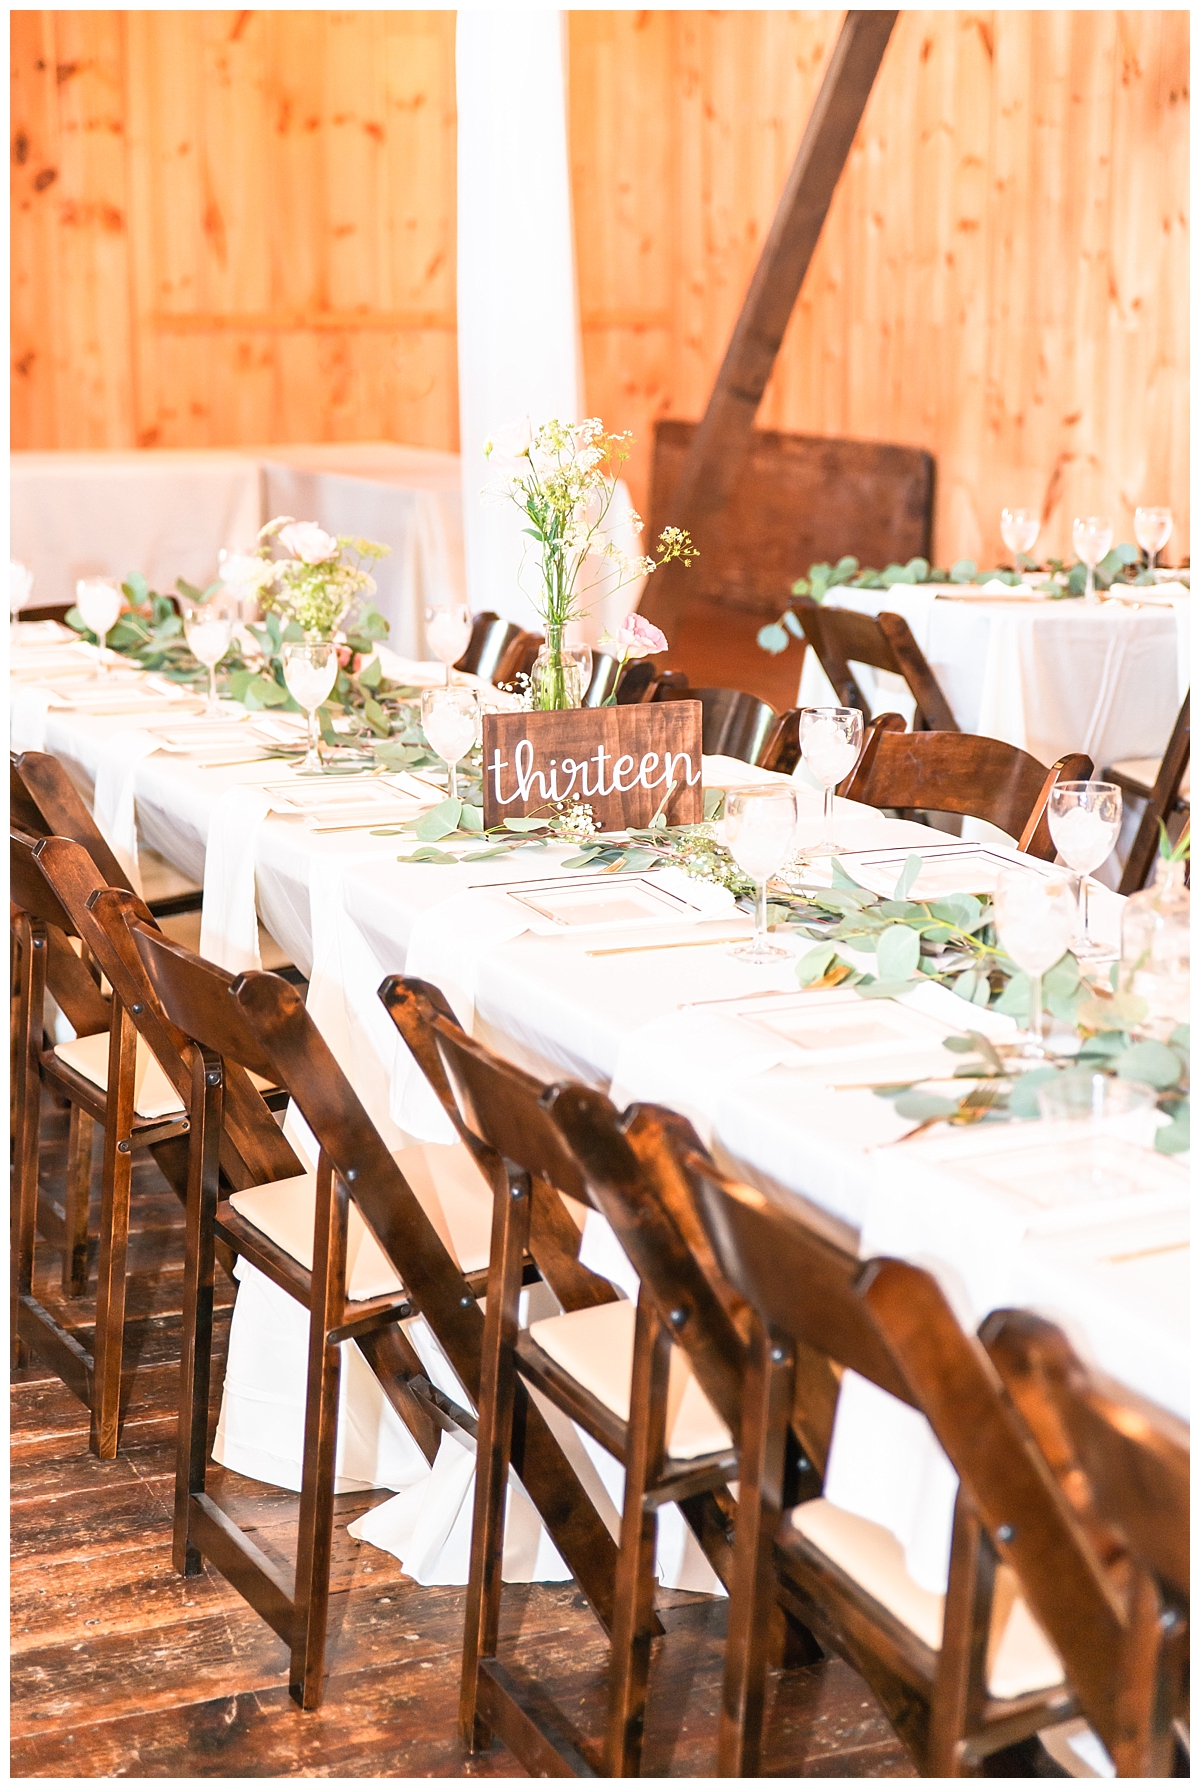 Rustic elegant barn wedding reception